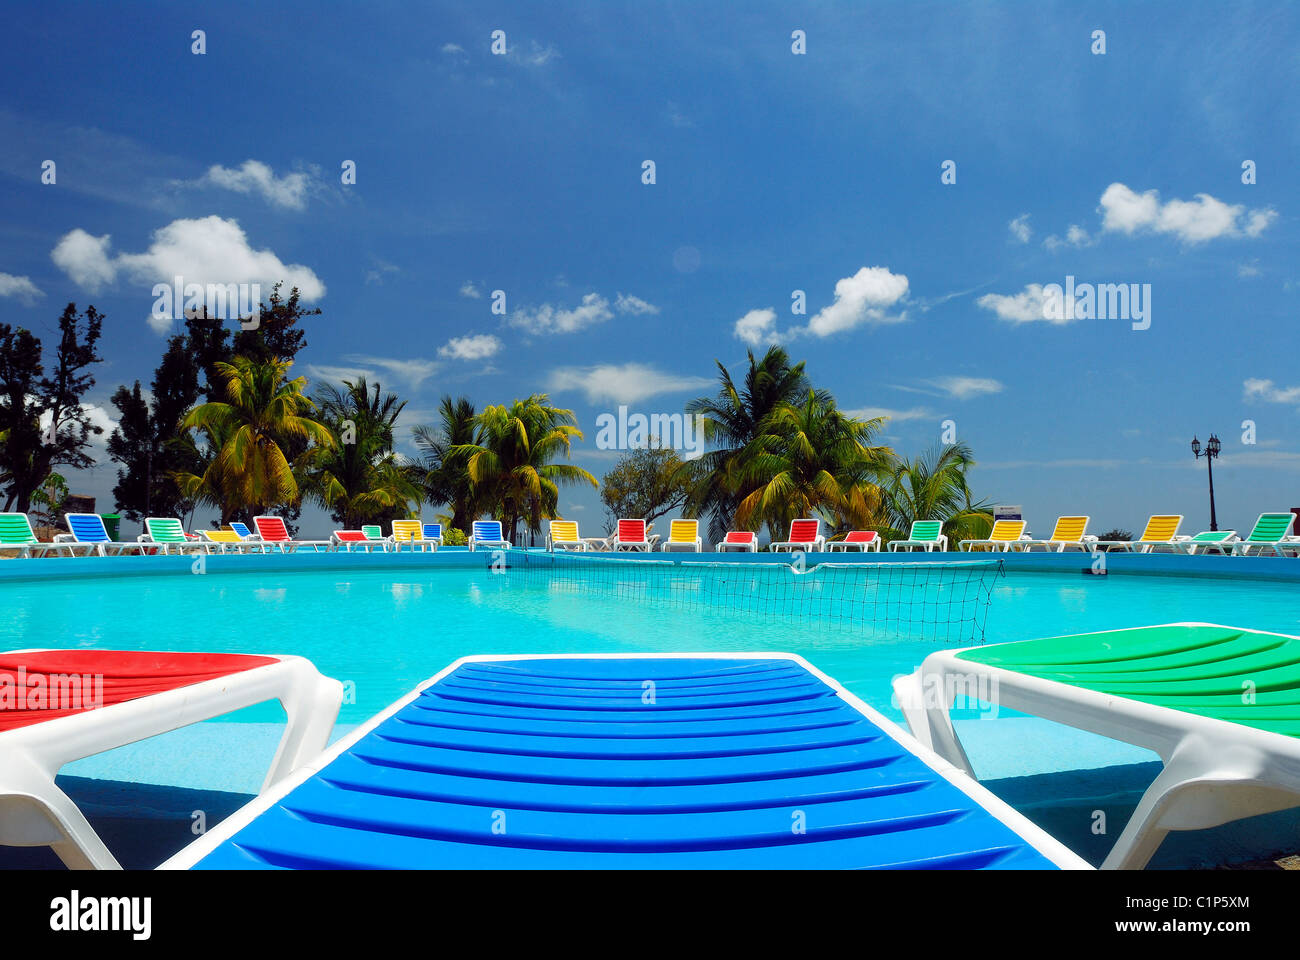 Cuba, Trinidad, Las Cuevas Hotel pool Stock Photo - Alamy